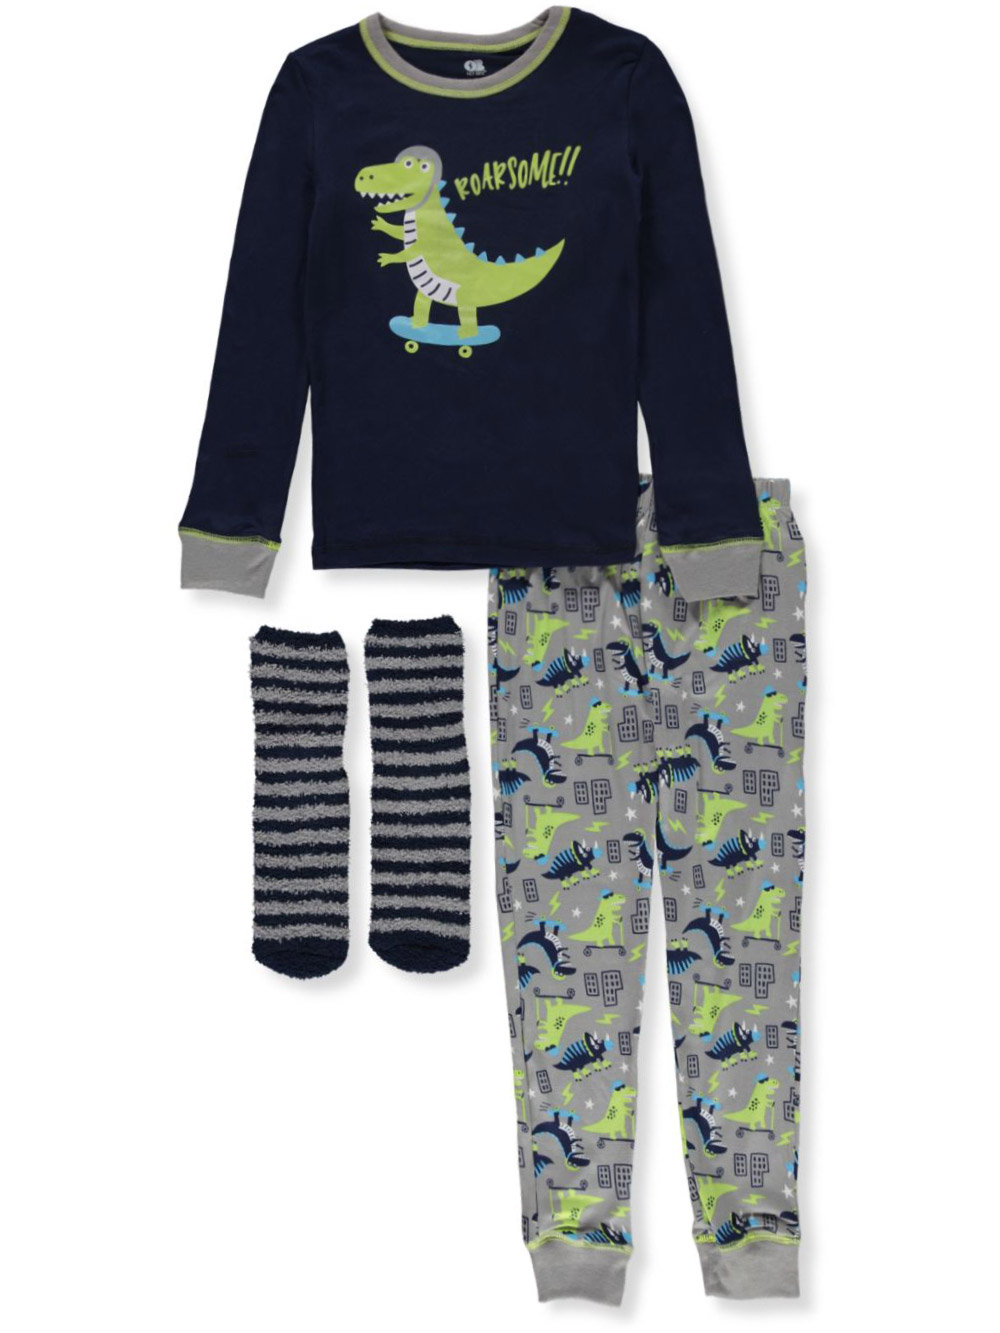 Boys Navy/multi Pajamas